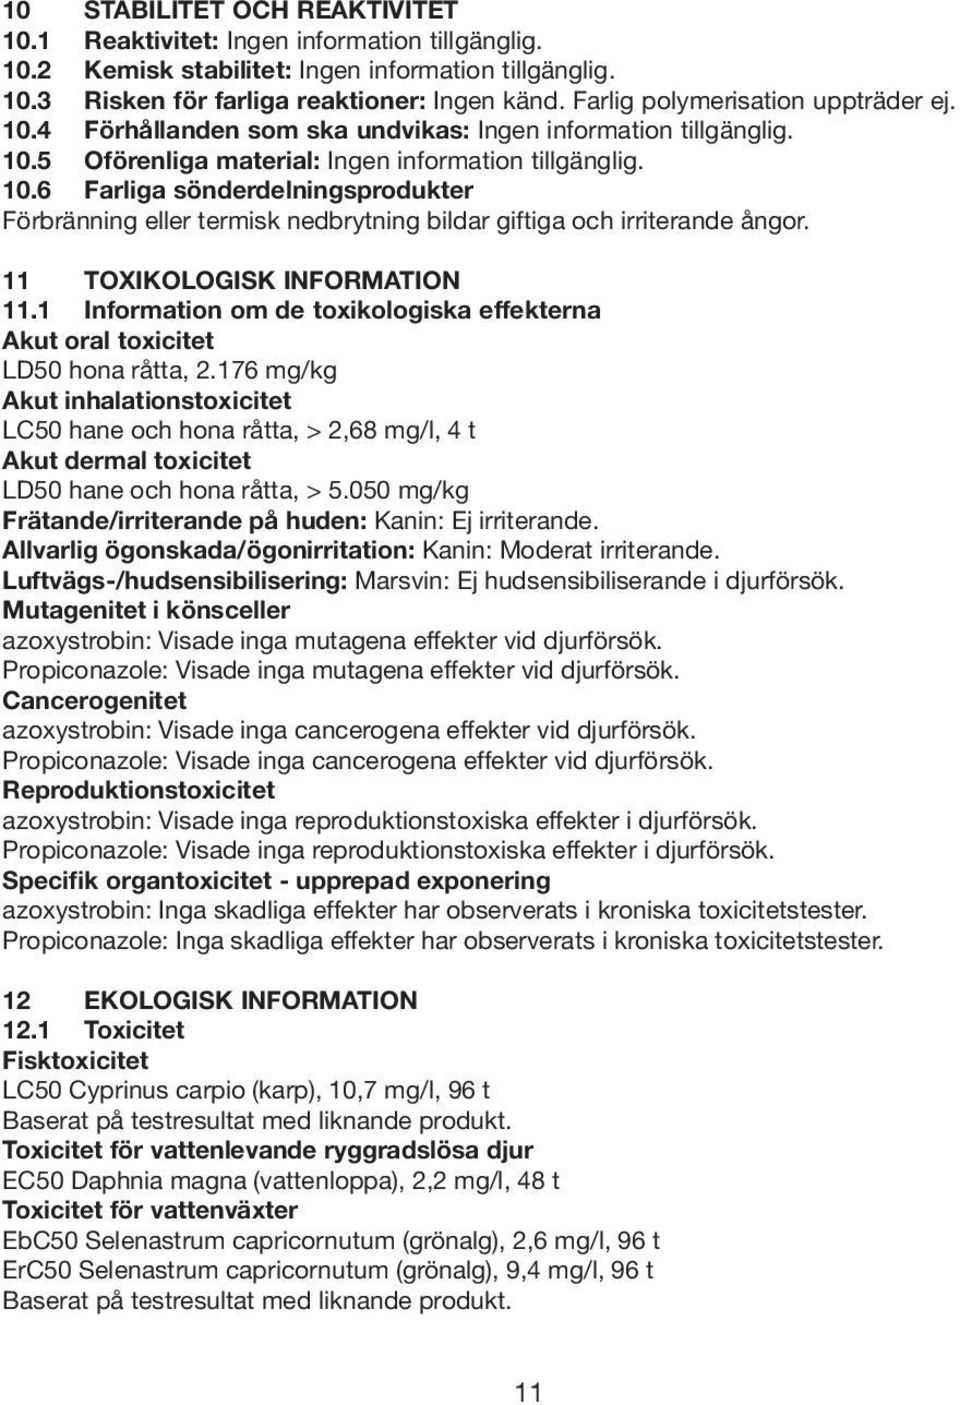 11 TOXIKOLOGISK INFORMATION 11.1 Information om de toxikologiska effekterna Akut oral toxicitet LD50 hona råtta, 2.